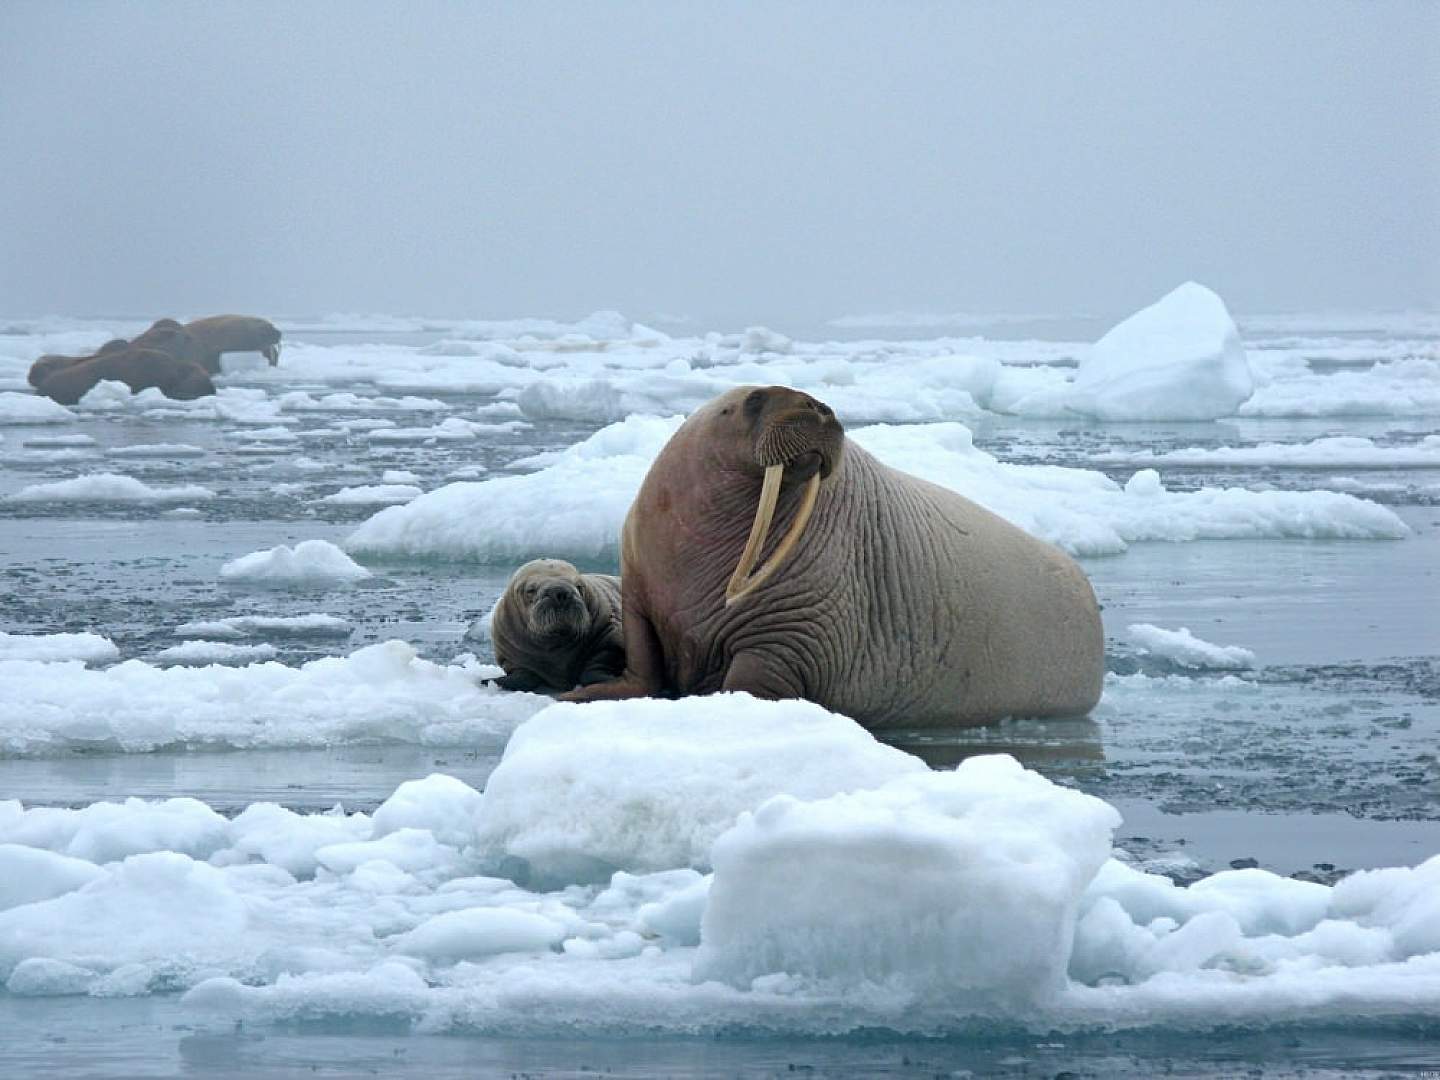 Alaskan Walrus in their natural habitat